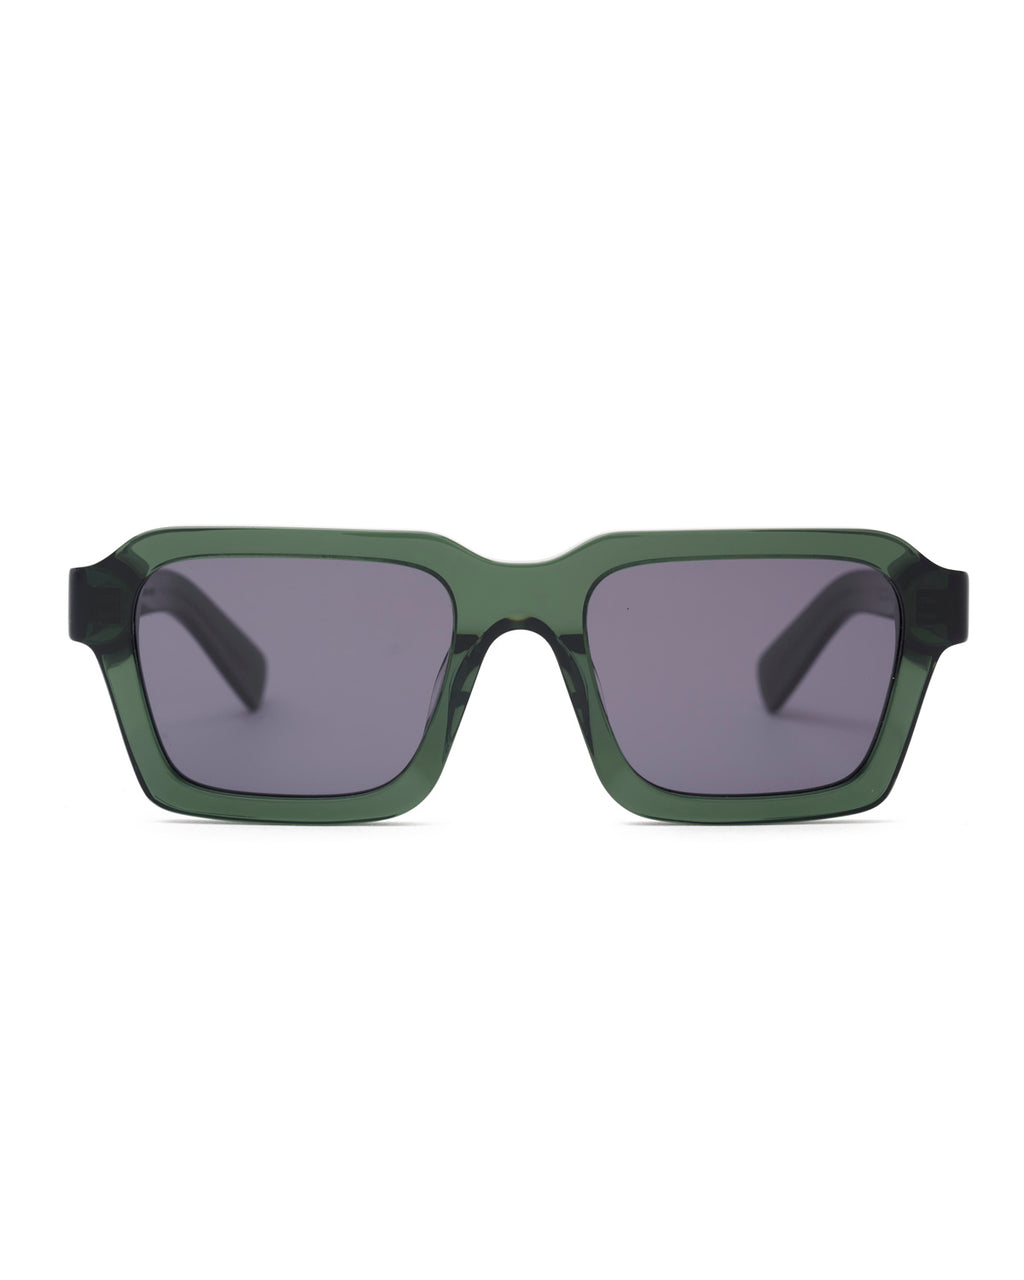 Staunton Sunglasses, Green Smoke